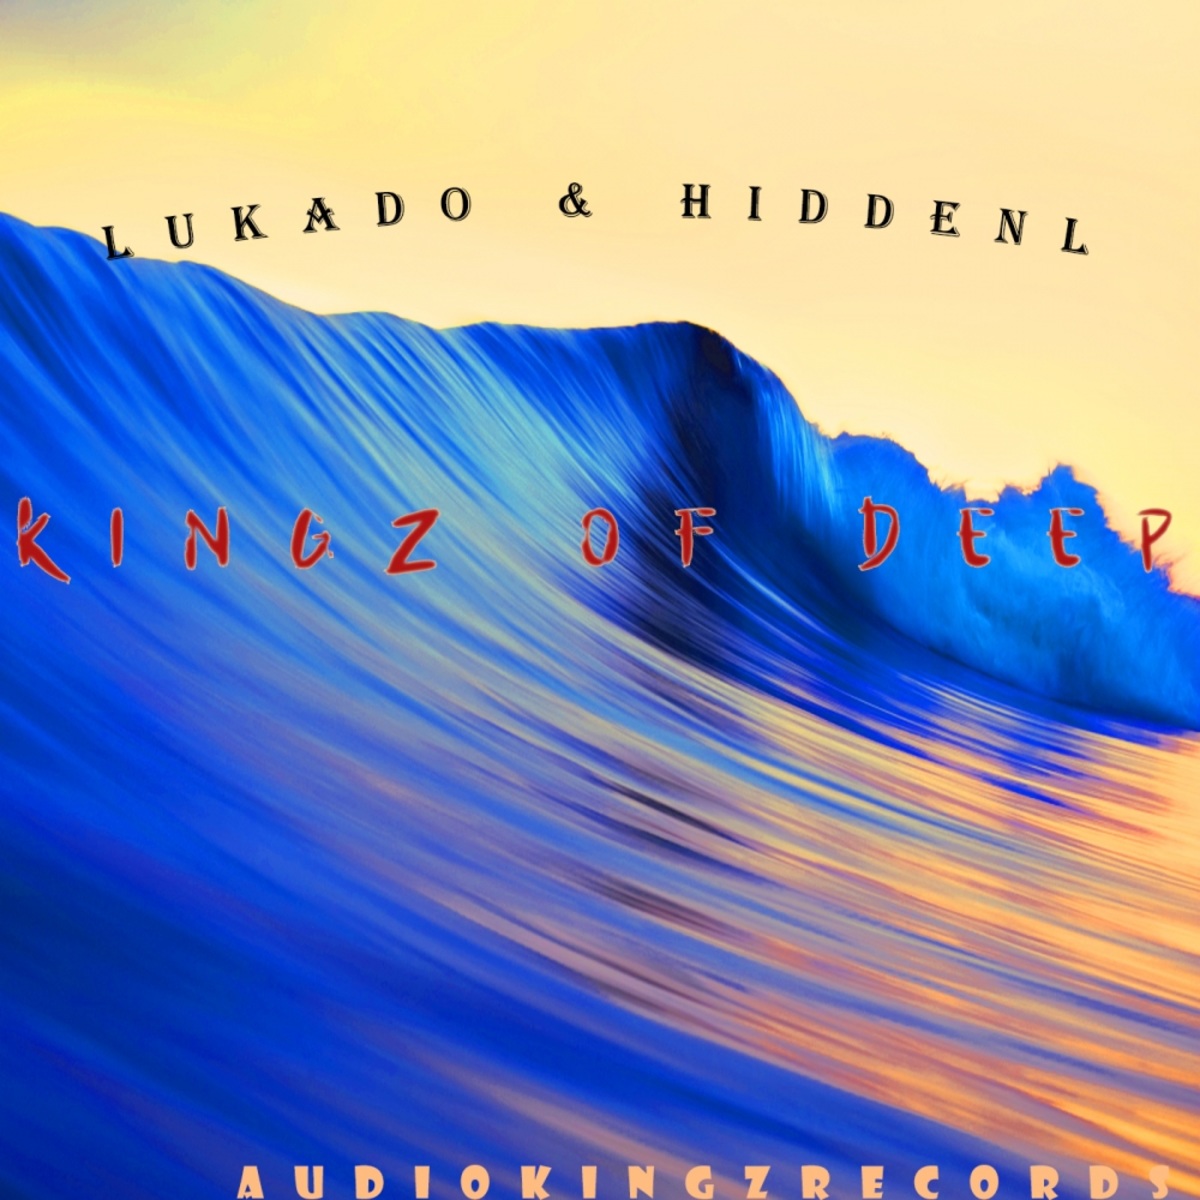 Lukado & HiddenL - Kingz Of Deep / Audio Kingz Records